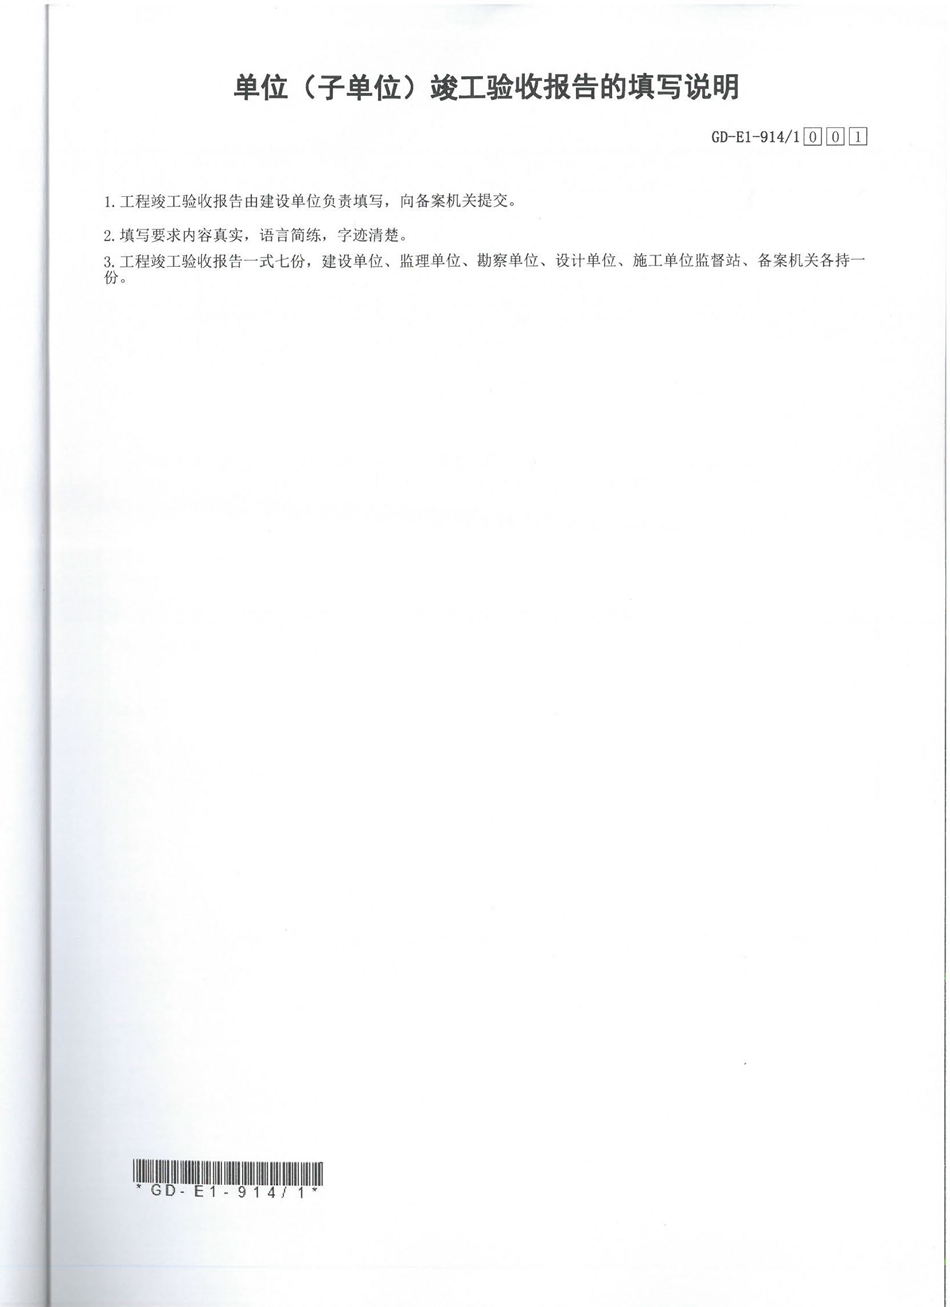 广东东莞市公安局厚街分局-竣工验收报告（设备部分）  (1)_页面_2.jpg